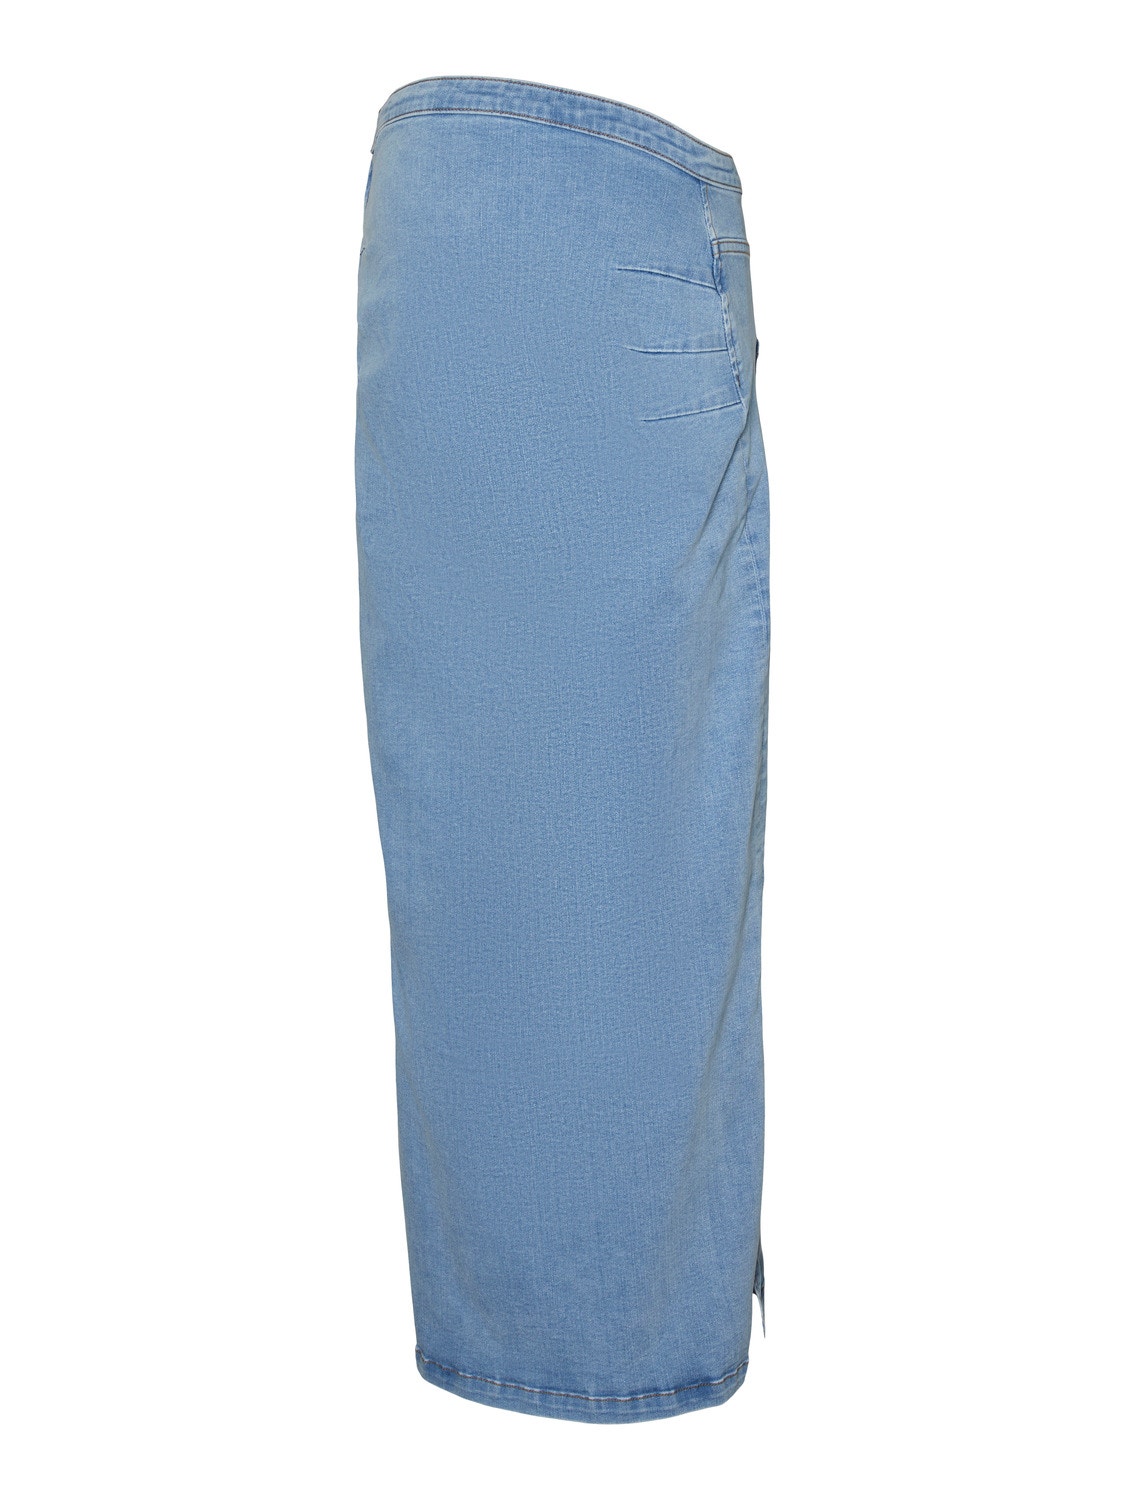 MAMA.LICIOUS Vente-nederdel -Light Blue Denim - 20020358